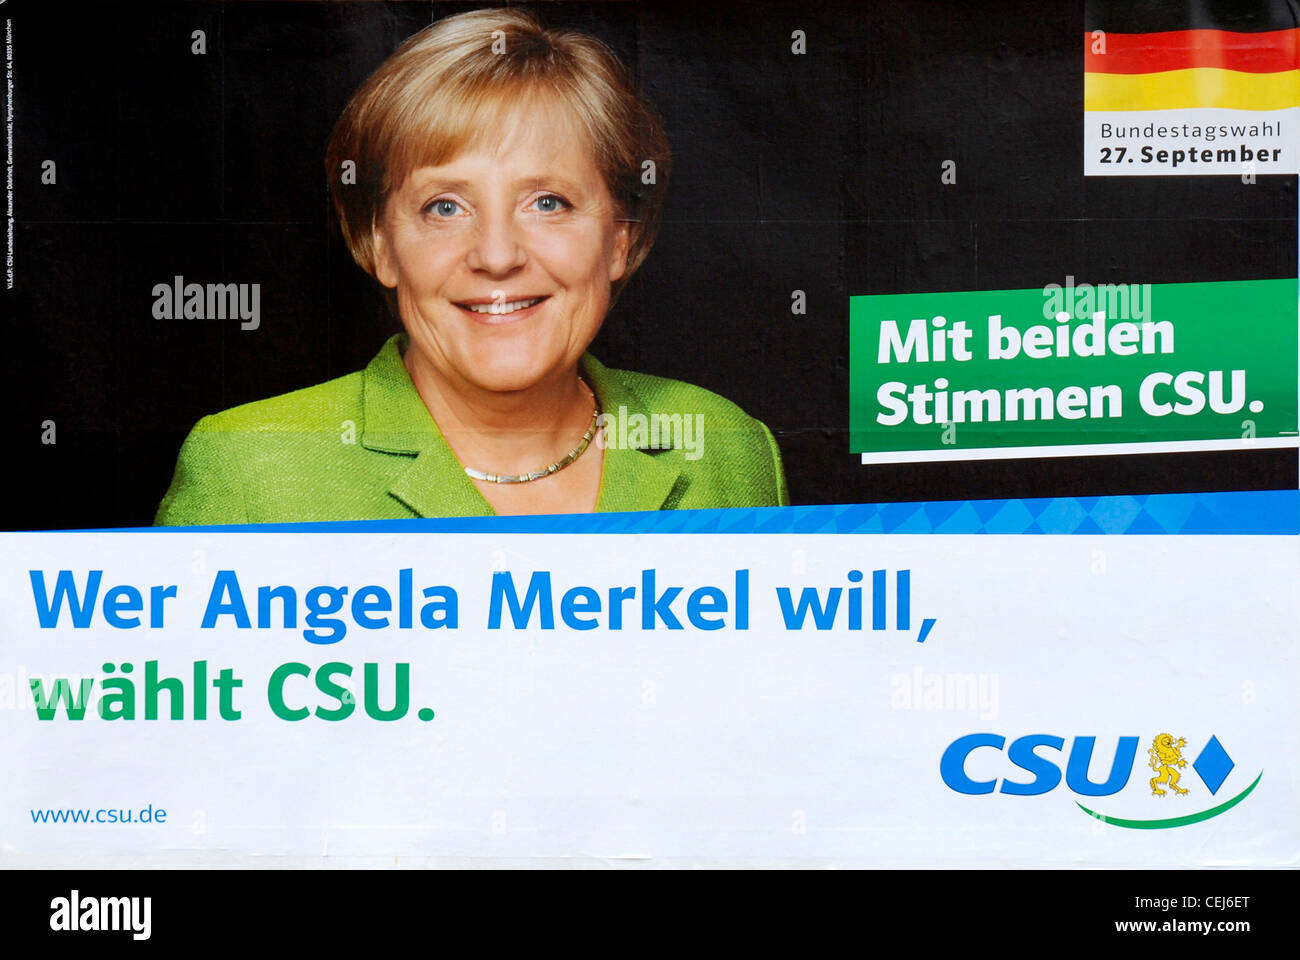 Cartellone elettorale del partito bavarese CSU per Angela Merkel al Bundestag elezioni del 2009. Foto Stock